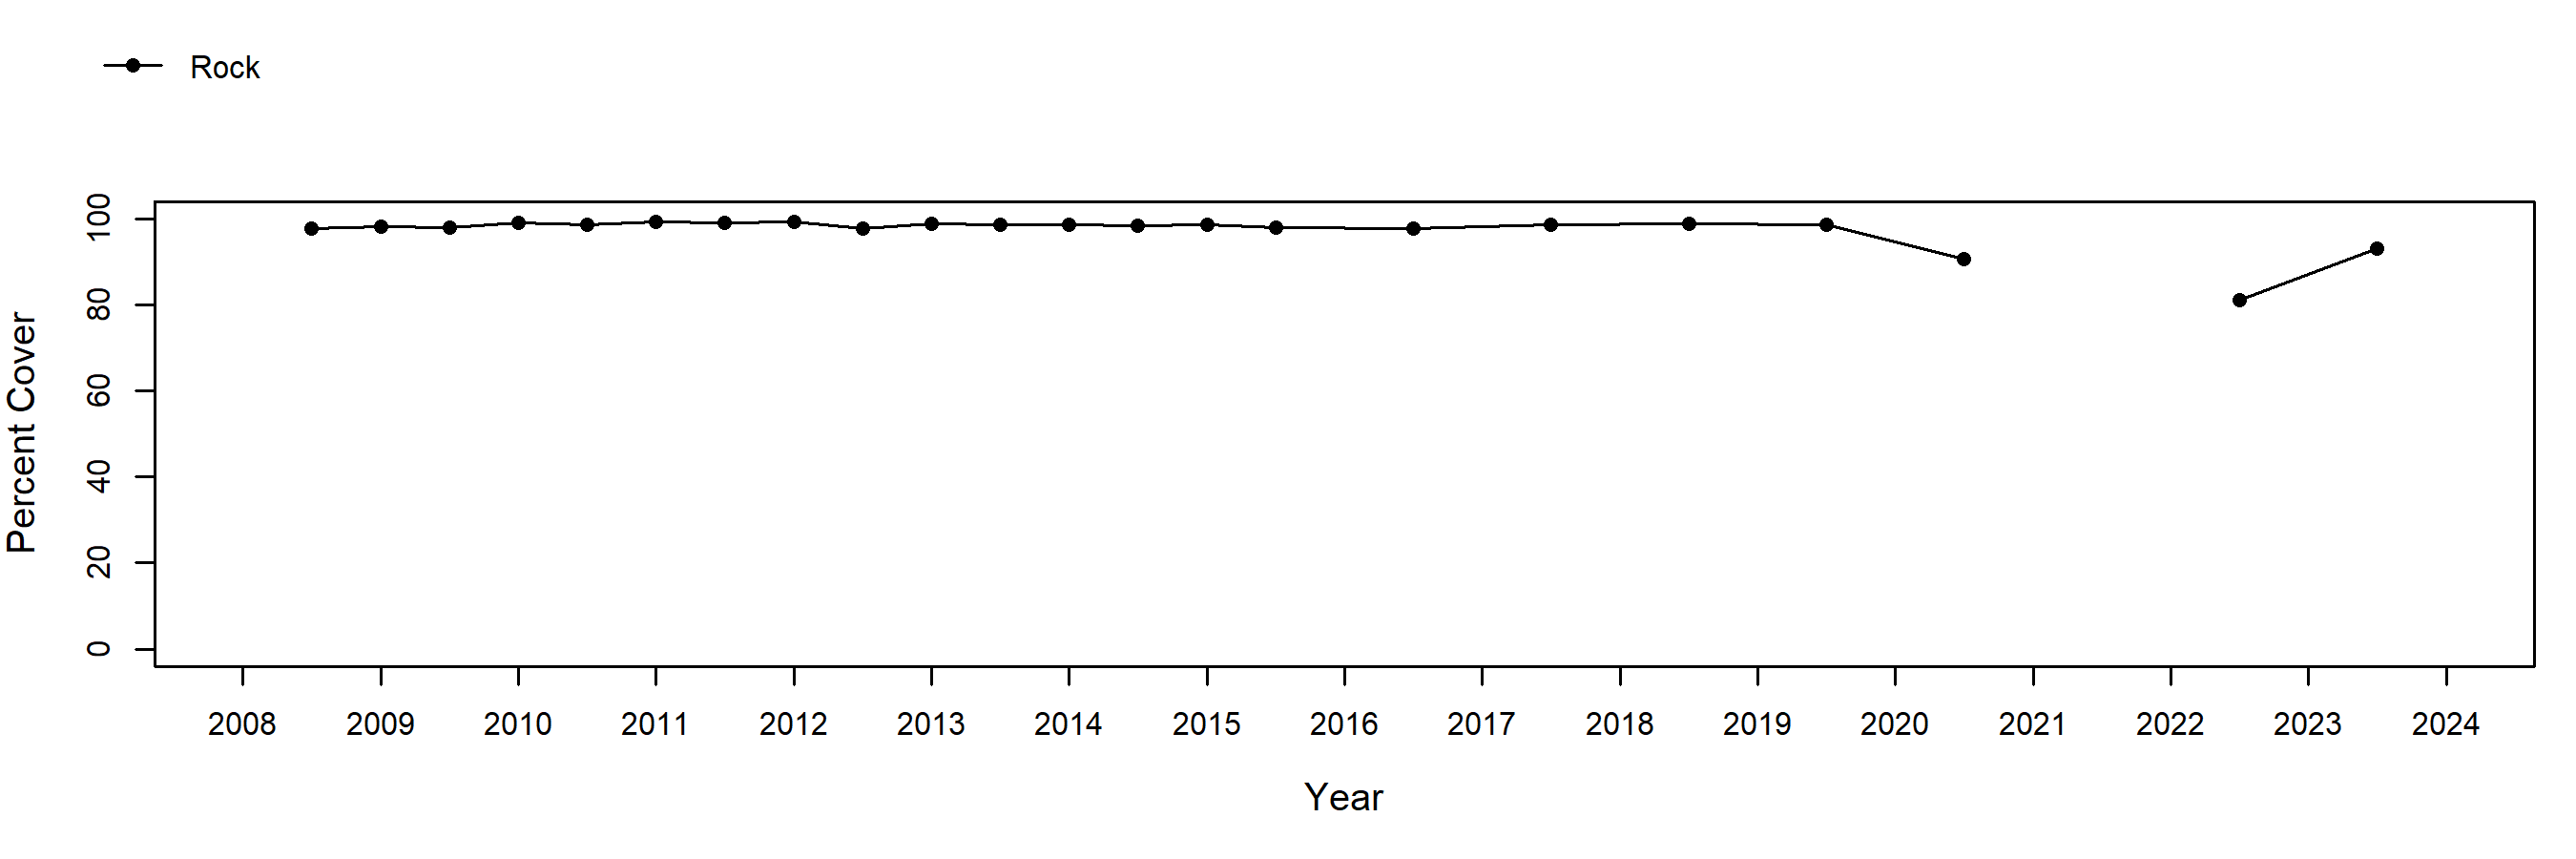 Point Fermin rock trend plot